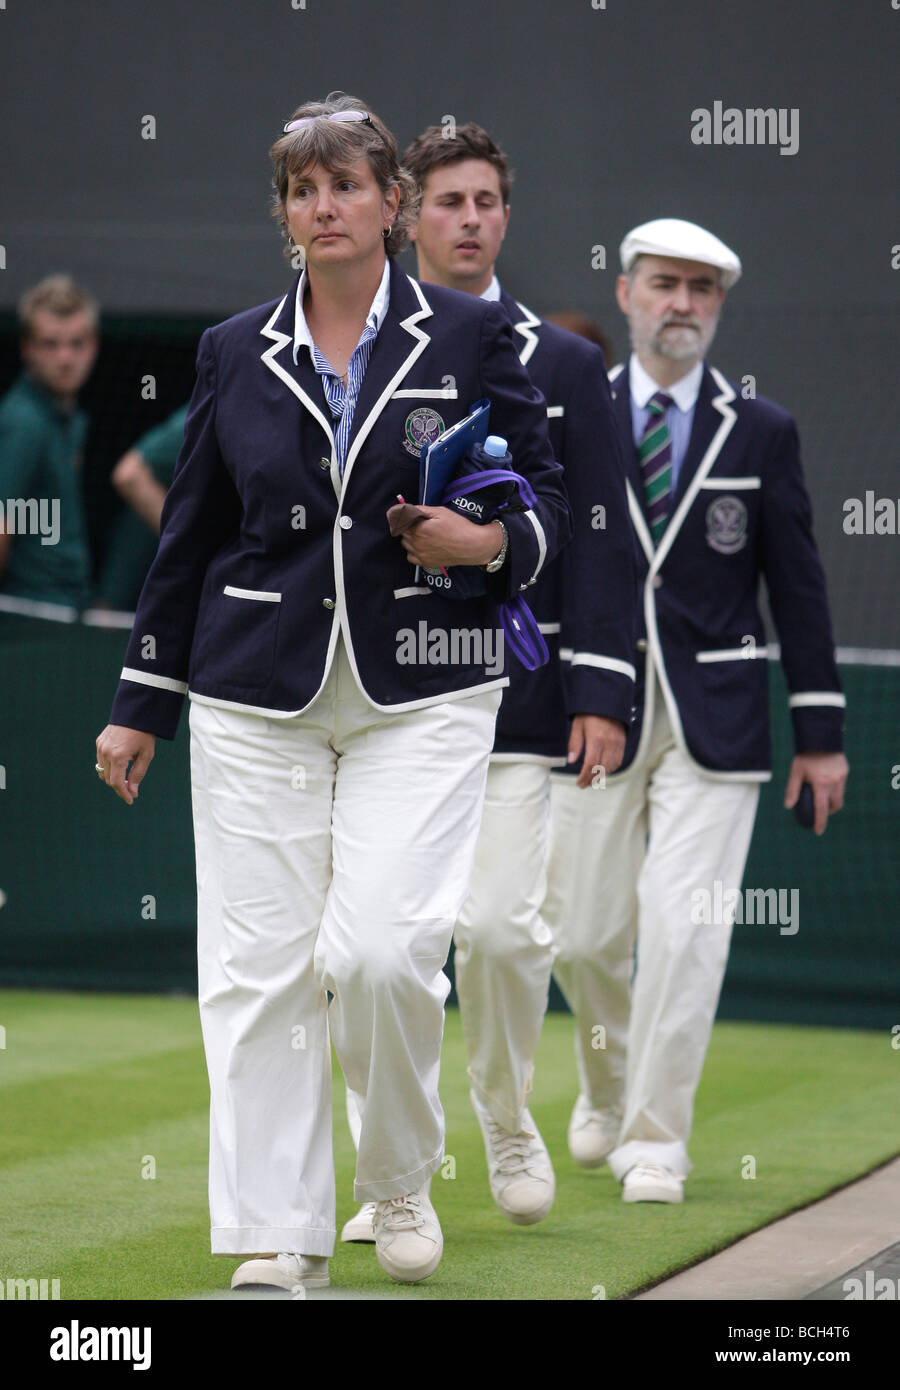 Juges de marcher sur le Court Central au Wimbledon 2009 Tournoi de tennis Banque D'Images